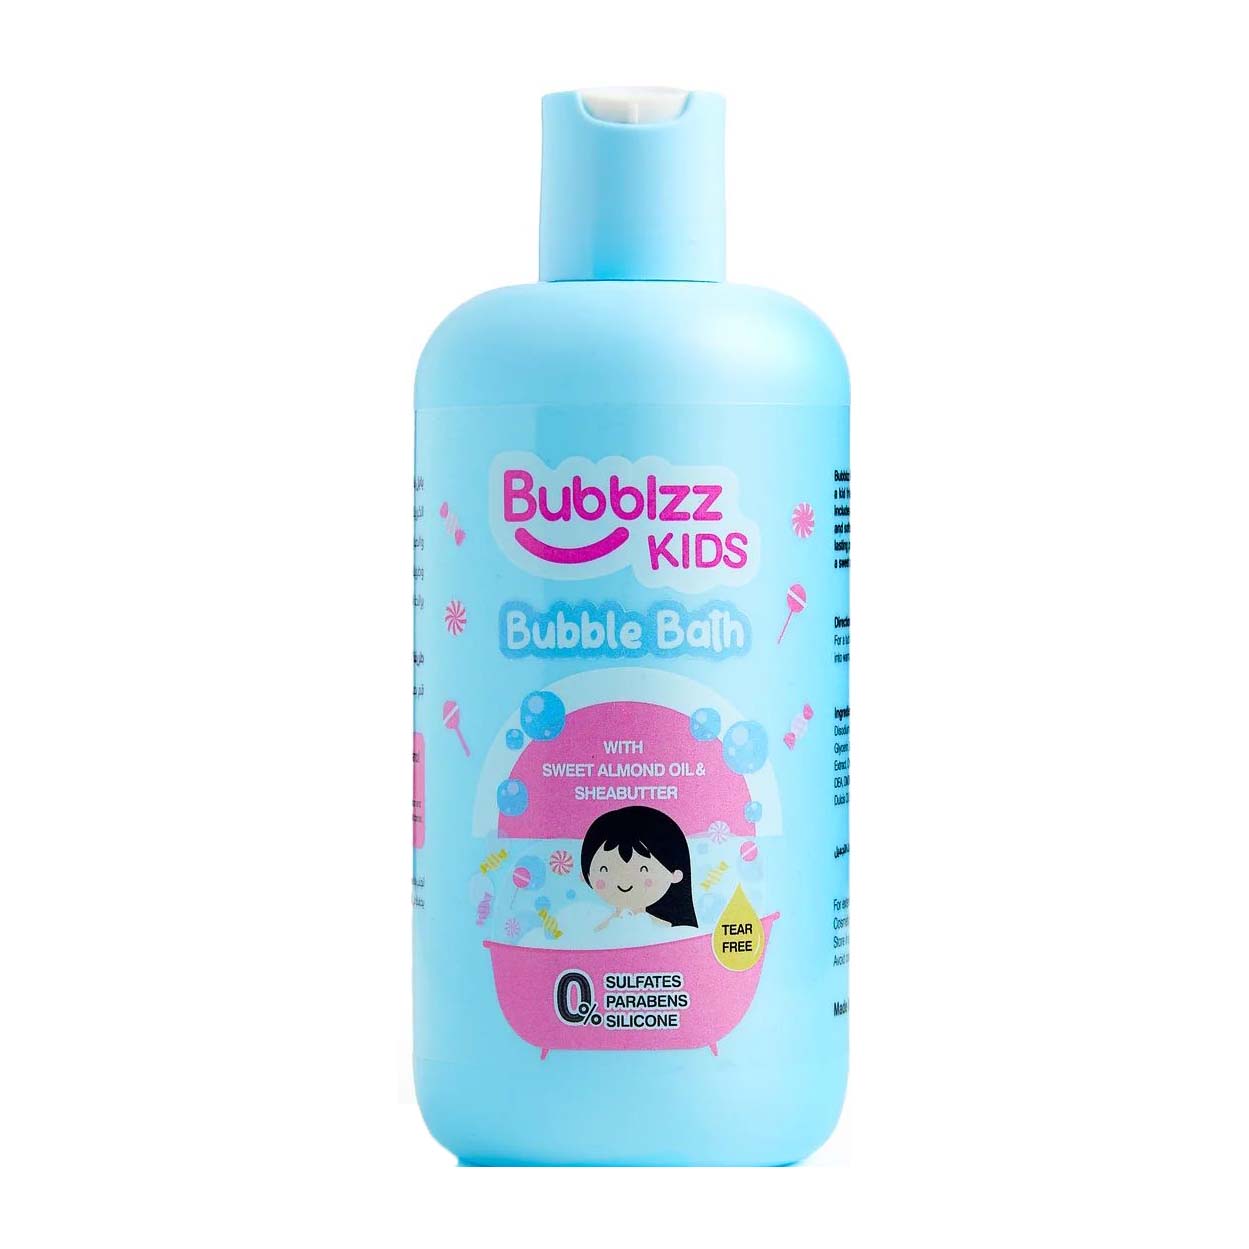 Bubblzz Kids Bubble Bath With Sweet Almond Oil & Shea Butter - 325ml - Bloom Pharmacy